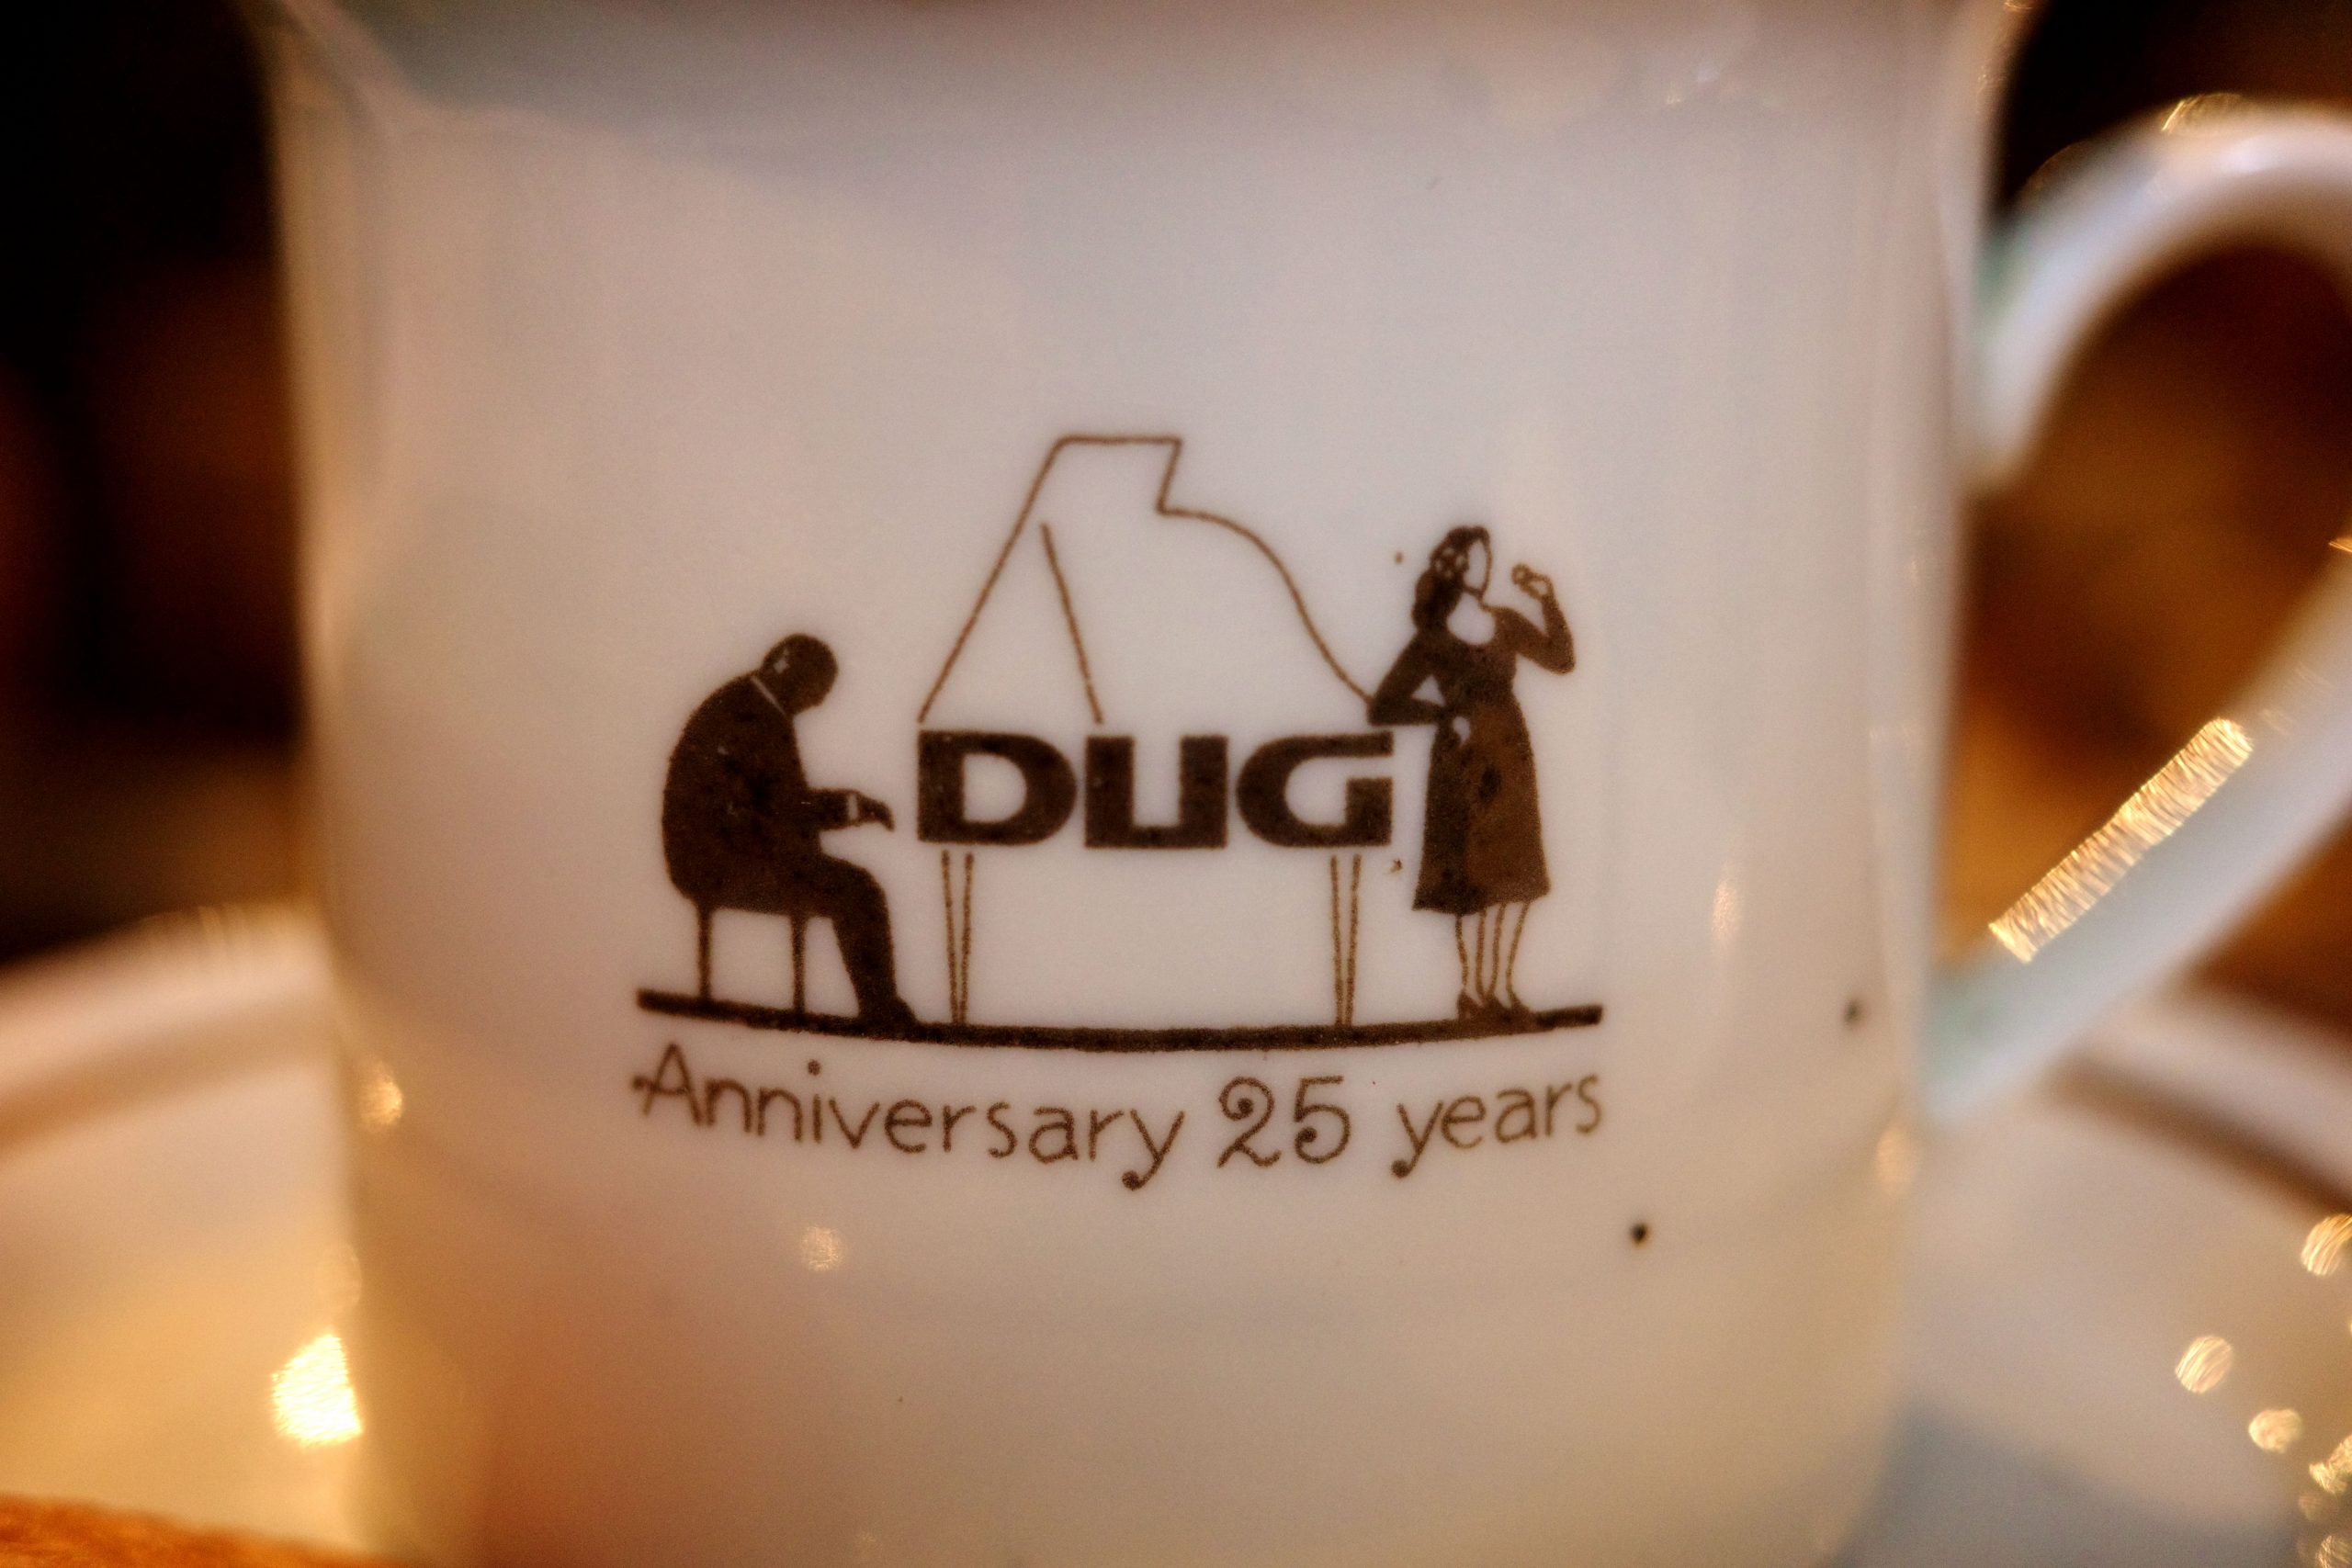 新宿の老舗Jazz喫茶『DUG(ダグ)』。いま再注目を浴びる後世に残したい“Jazz喫茶”の歴史に迫るブラウニー